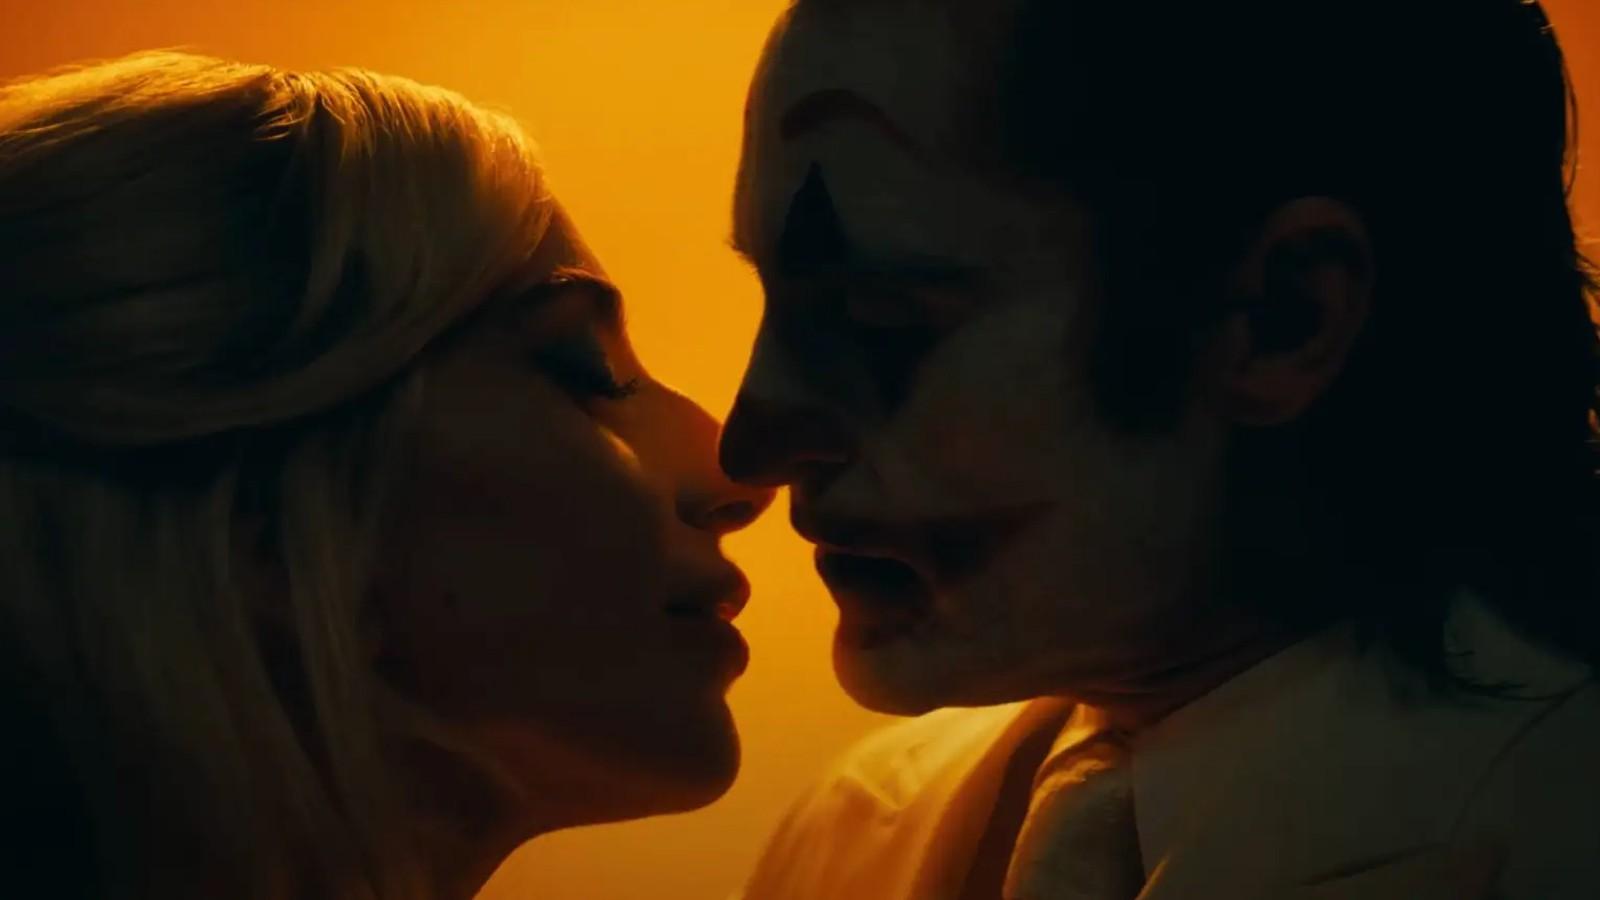 Harley Quinn and Joker sharing a kiss in Folie à Deux.